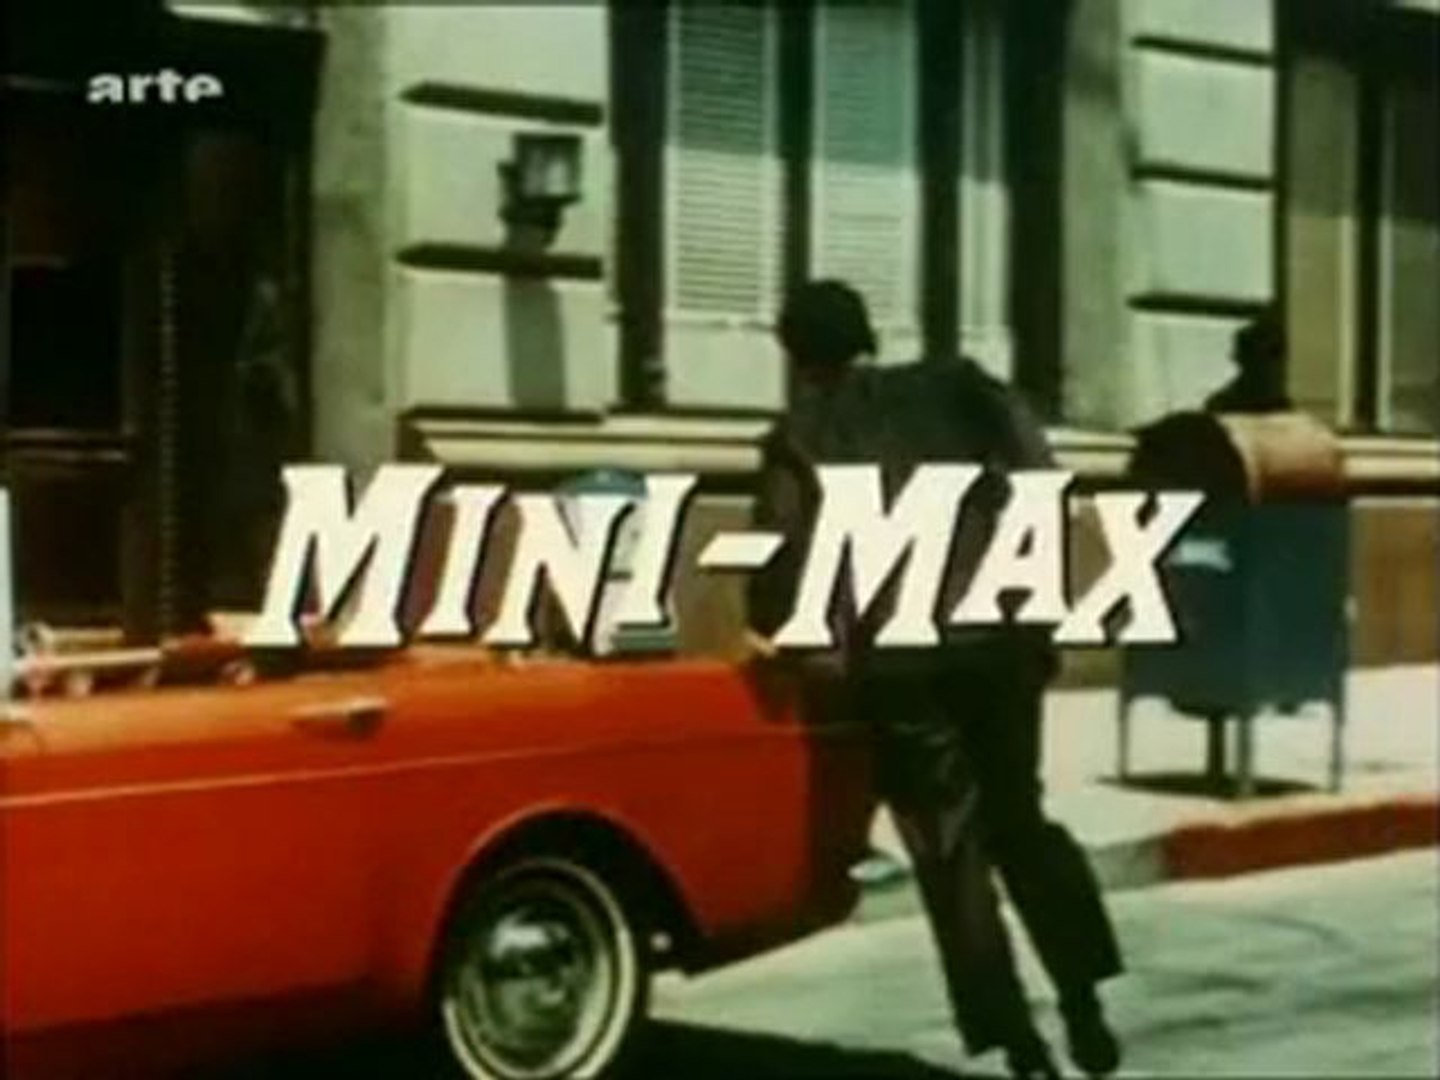 Max la menace - Générique (Série tv) - Vidéo Dailymotion